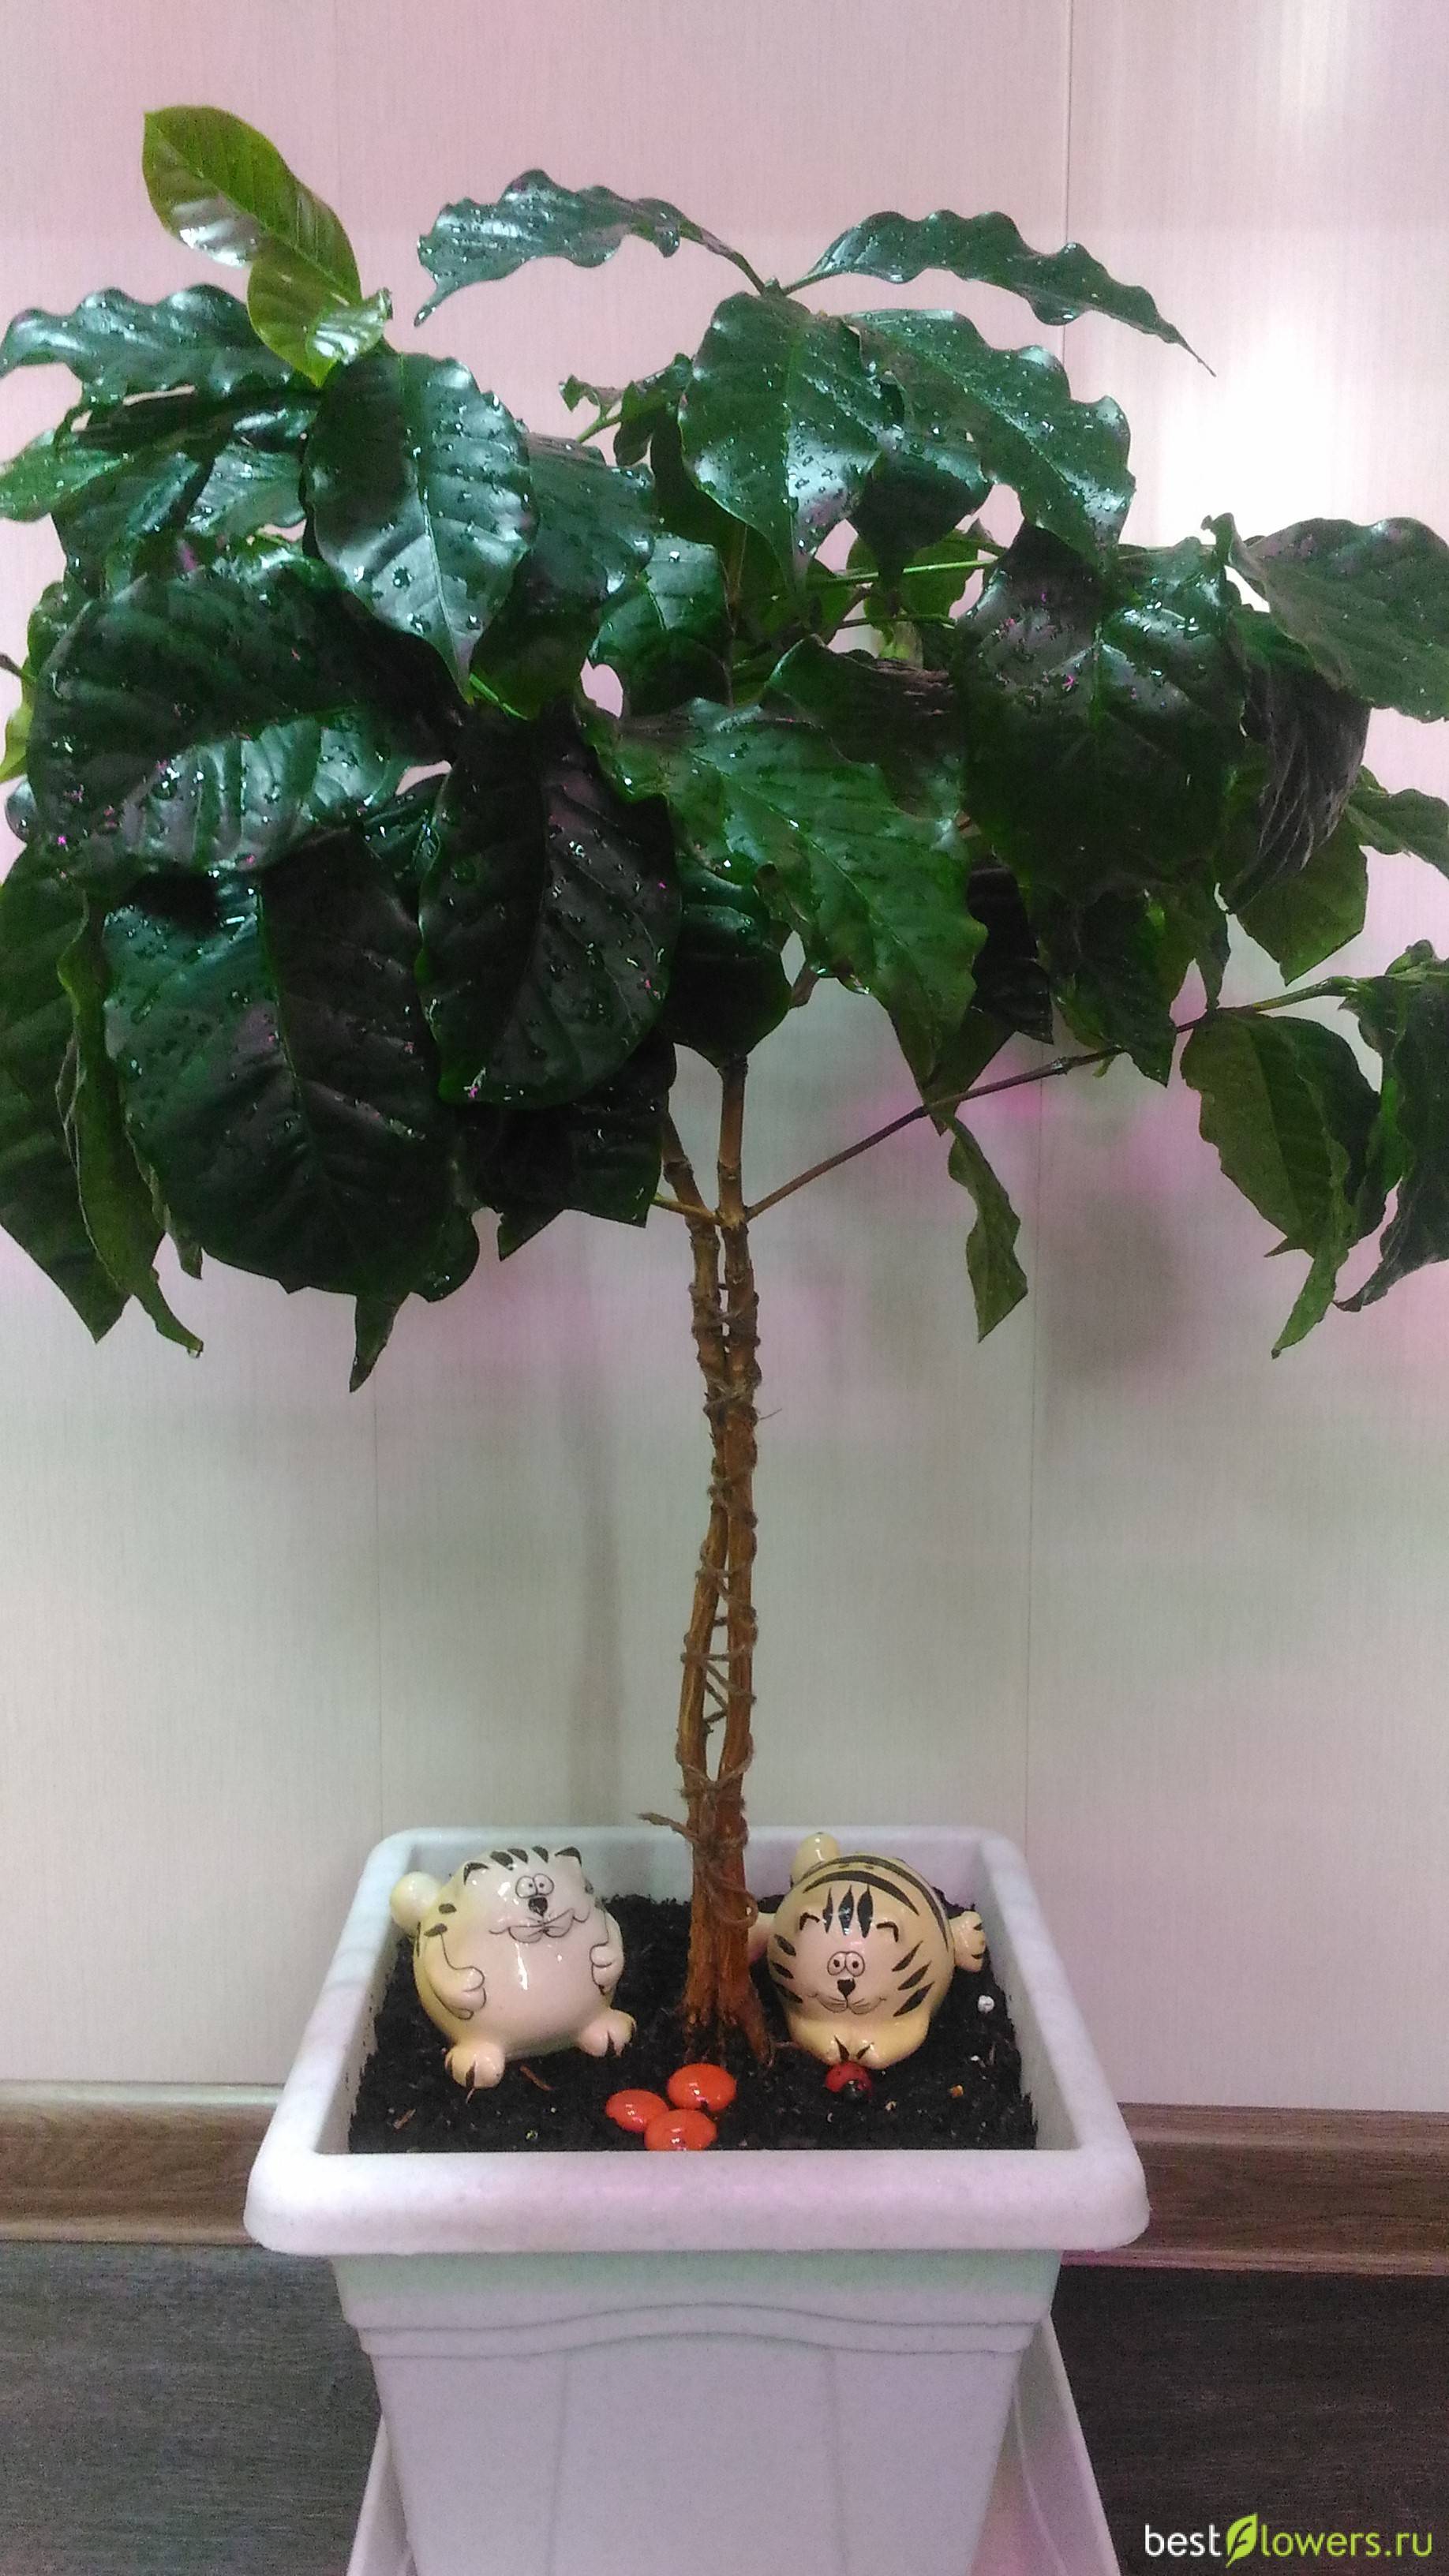 Кофейное дерево в доме: посадка семян и черенков, возделывание - цветочки - 25 марта - 43112009259 - медиаплатформа миртесен